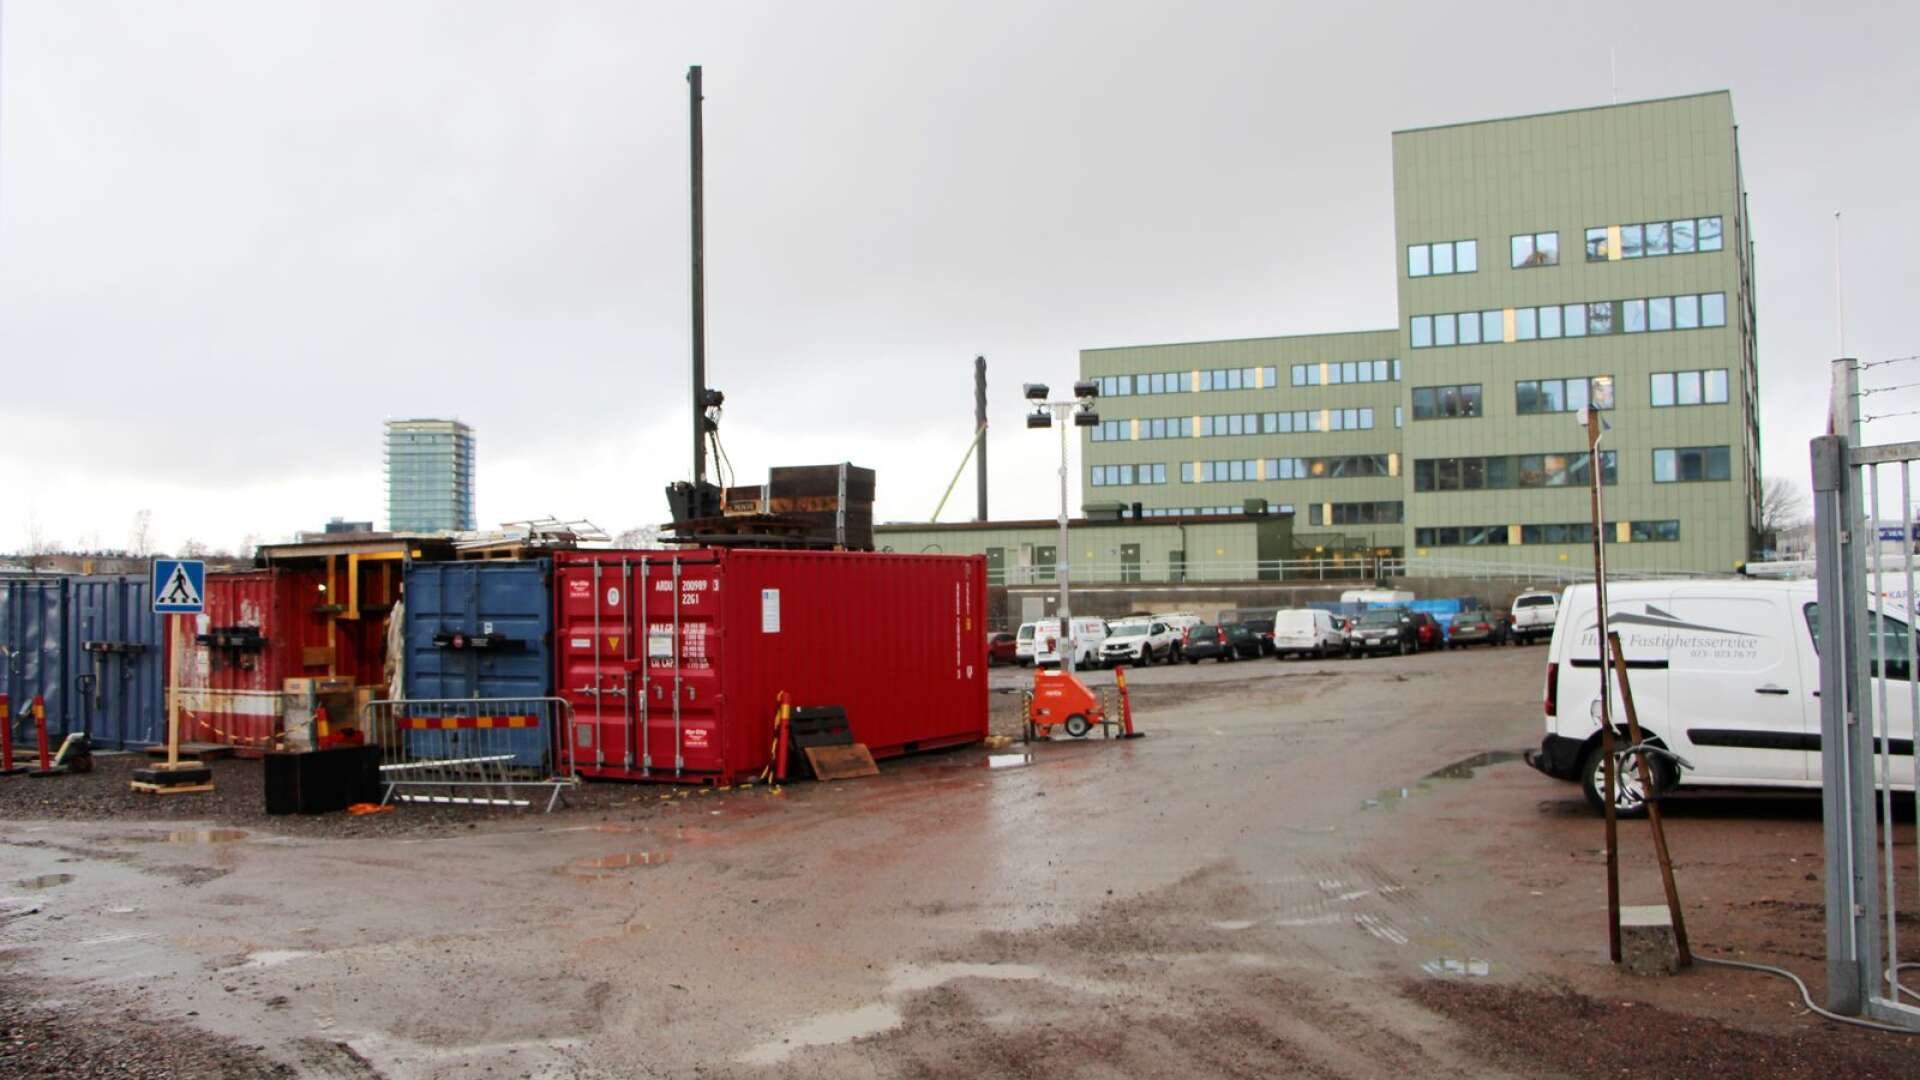 FB bostad har bestämt sig för att inte bygga bostäder på tomten intill MSB vid Tullholmsviken.